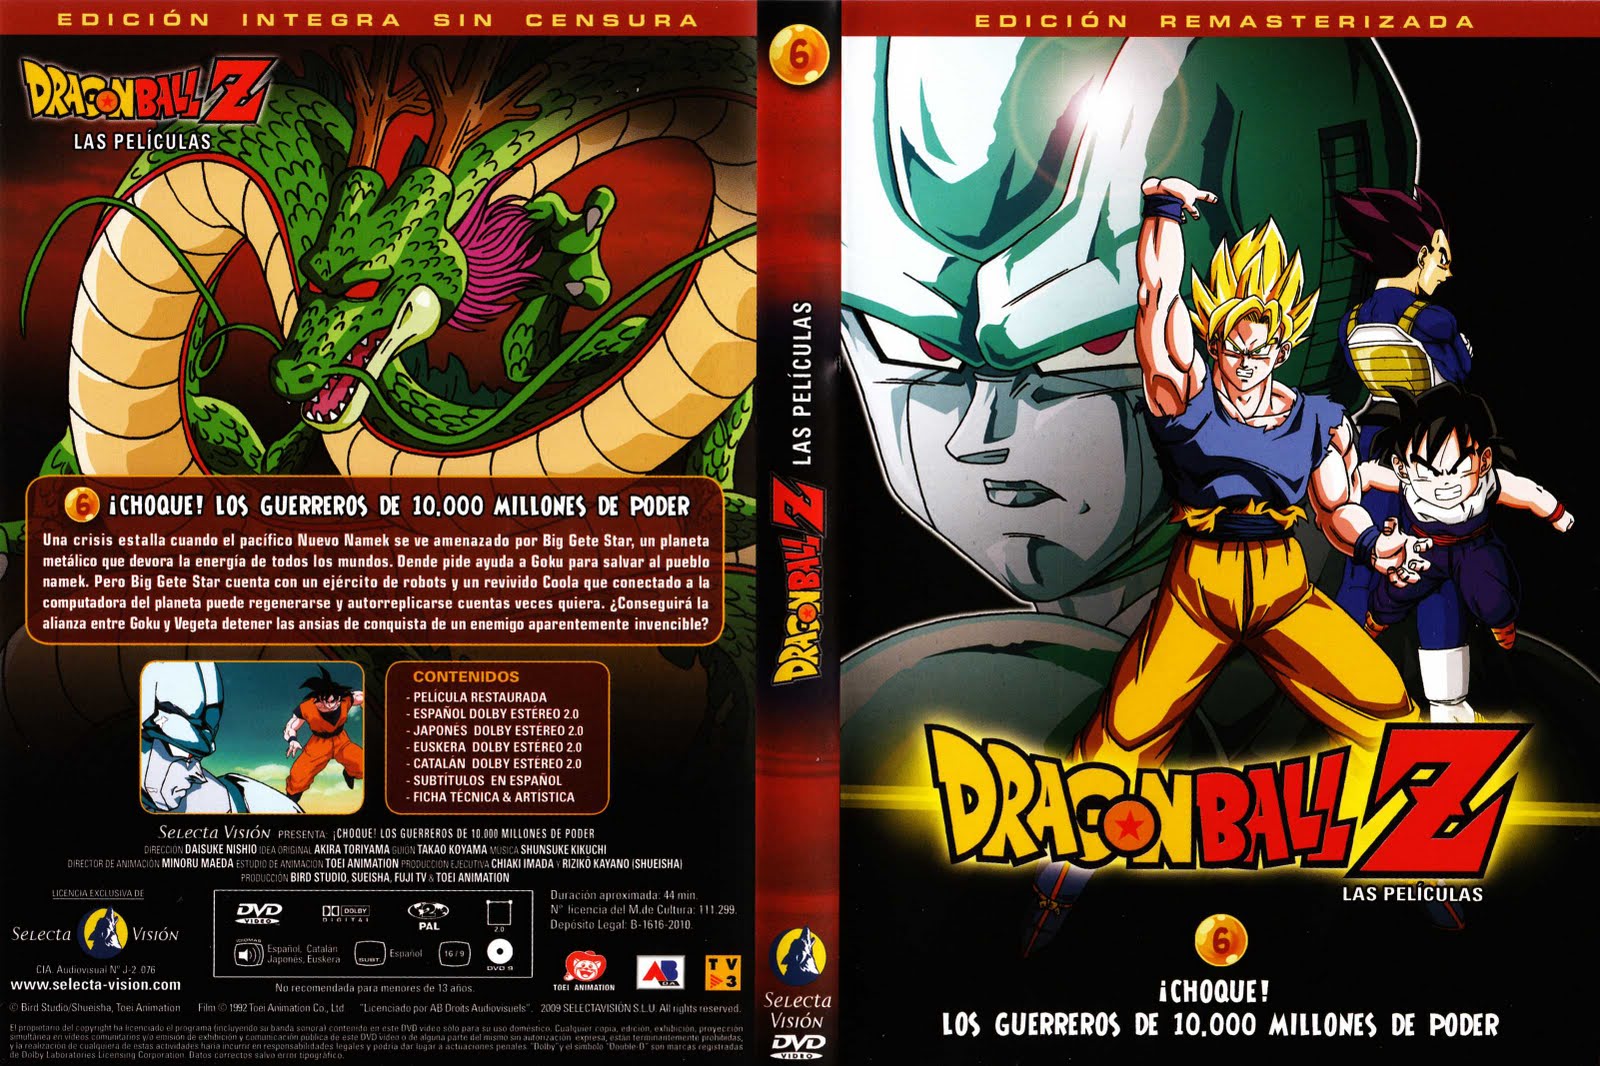 06-Guerreros_de_fuerza_ilimitada - [DD] Dragon Ball Z Película 6 Los Guerreros Más Poderosos - Anime Ligero [Descargas]